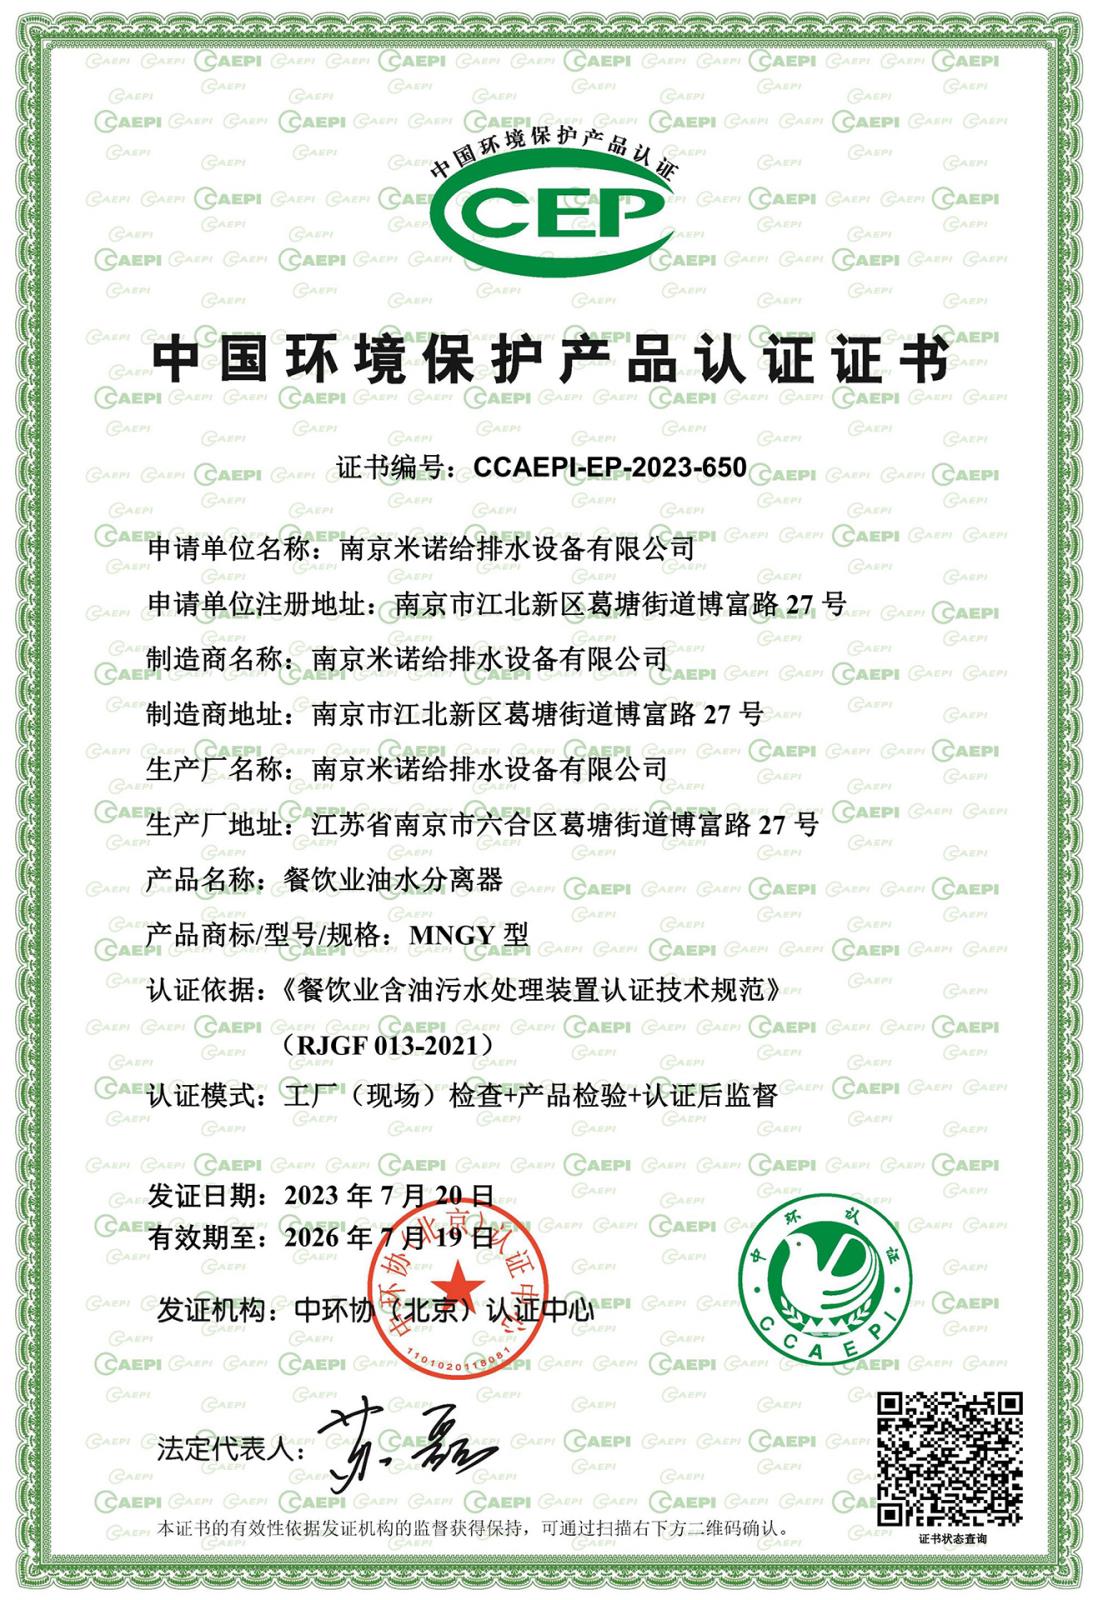 中环协CCEP认证